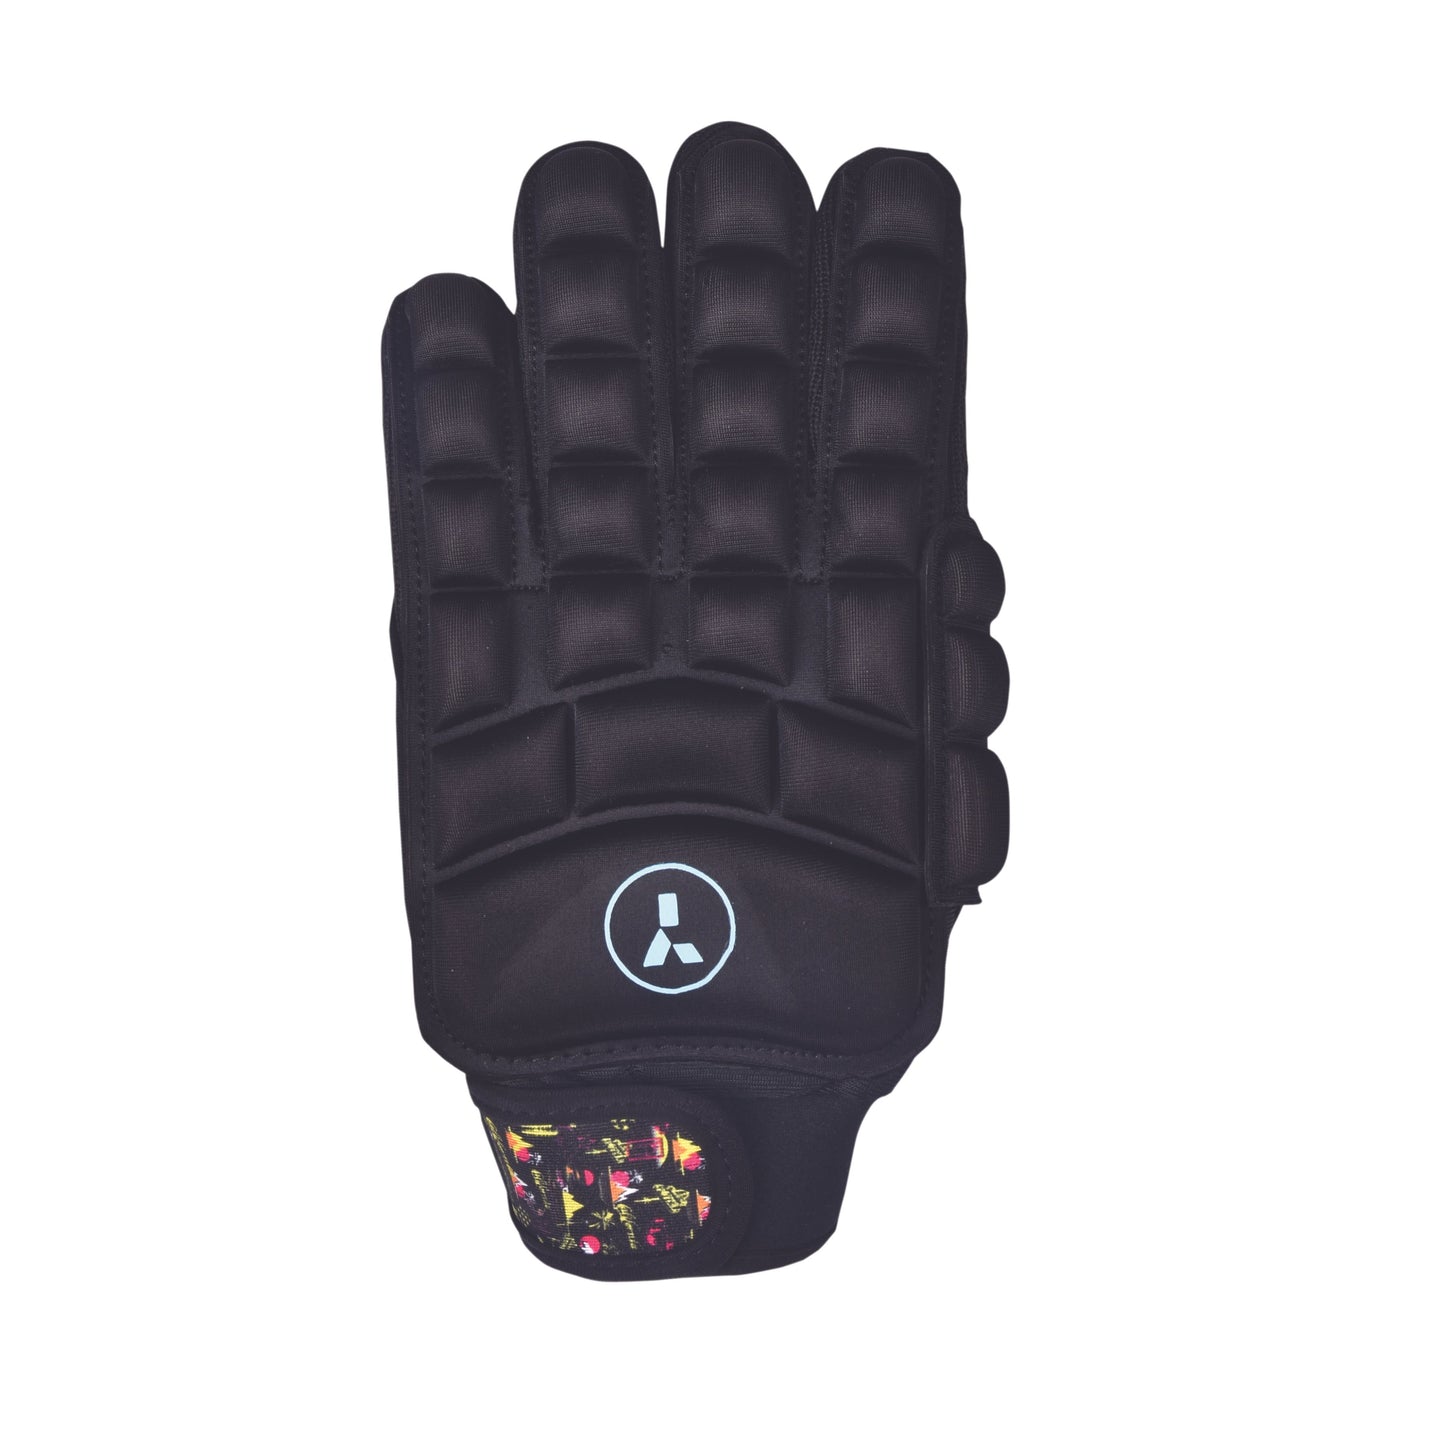 AT6 Foam Glove - XS & S